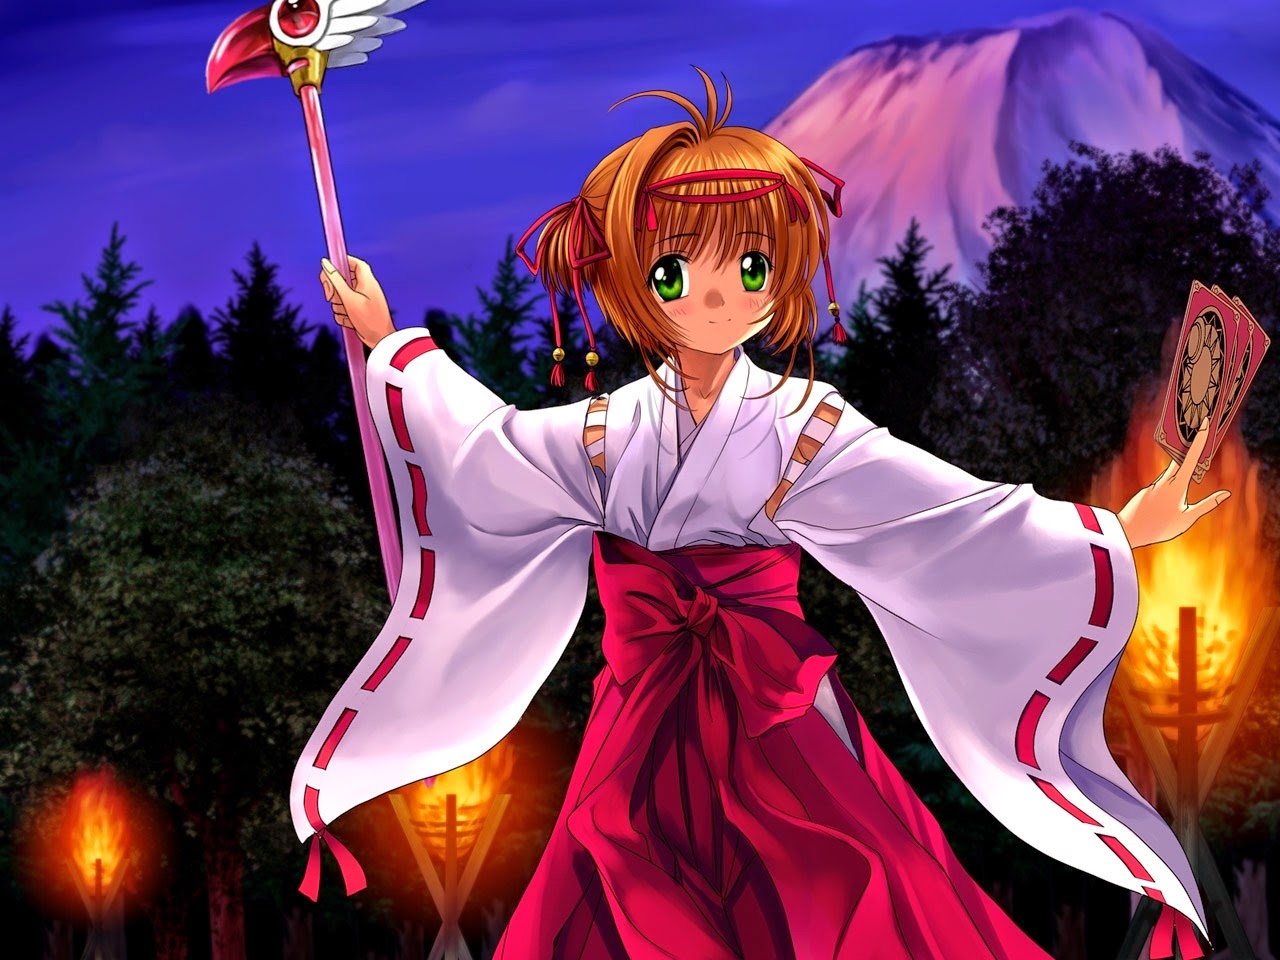 Hình nền hoạt hình Sakura: Bạn yêu thích anime và manga không? Cùng trang trí cho màn hình điện thoại của mình với bộ sưu tập hình ảnh hoa anh đào Sakura trong phong cách hoạt hình đáng yêu nhất. Hình nền của bạn sẽ trở nên đặc biệt hơn khi có những chi tiết nhỏ đầy màu sắc của Sakura. Hãy tưởng tượng mình đang đôi mắt nhìn Sakura cùng với một chú mèo hoạt hình đáng yêu!